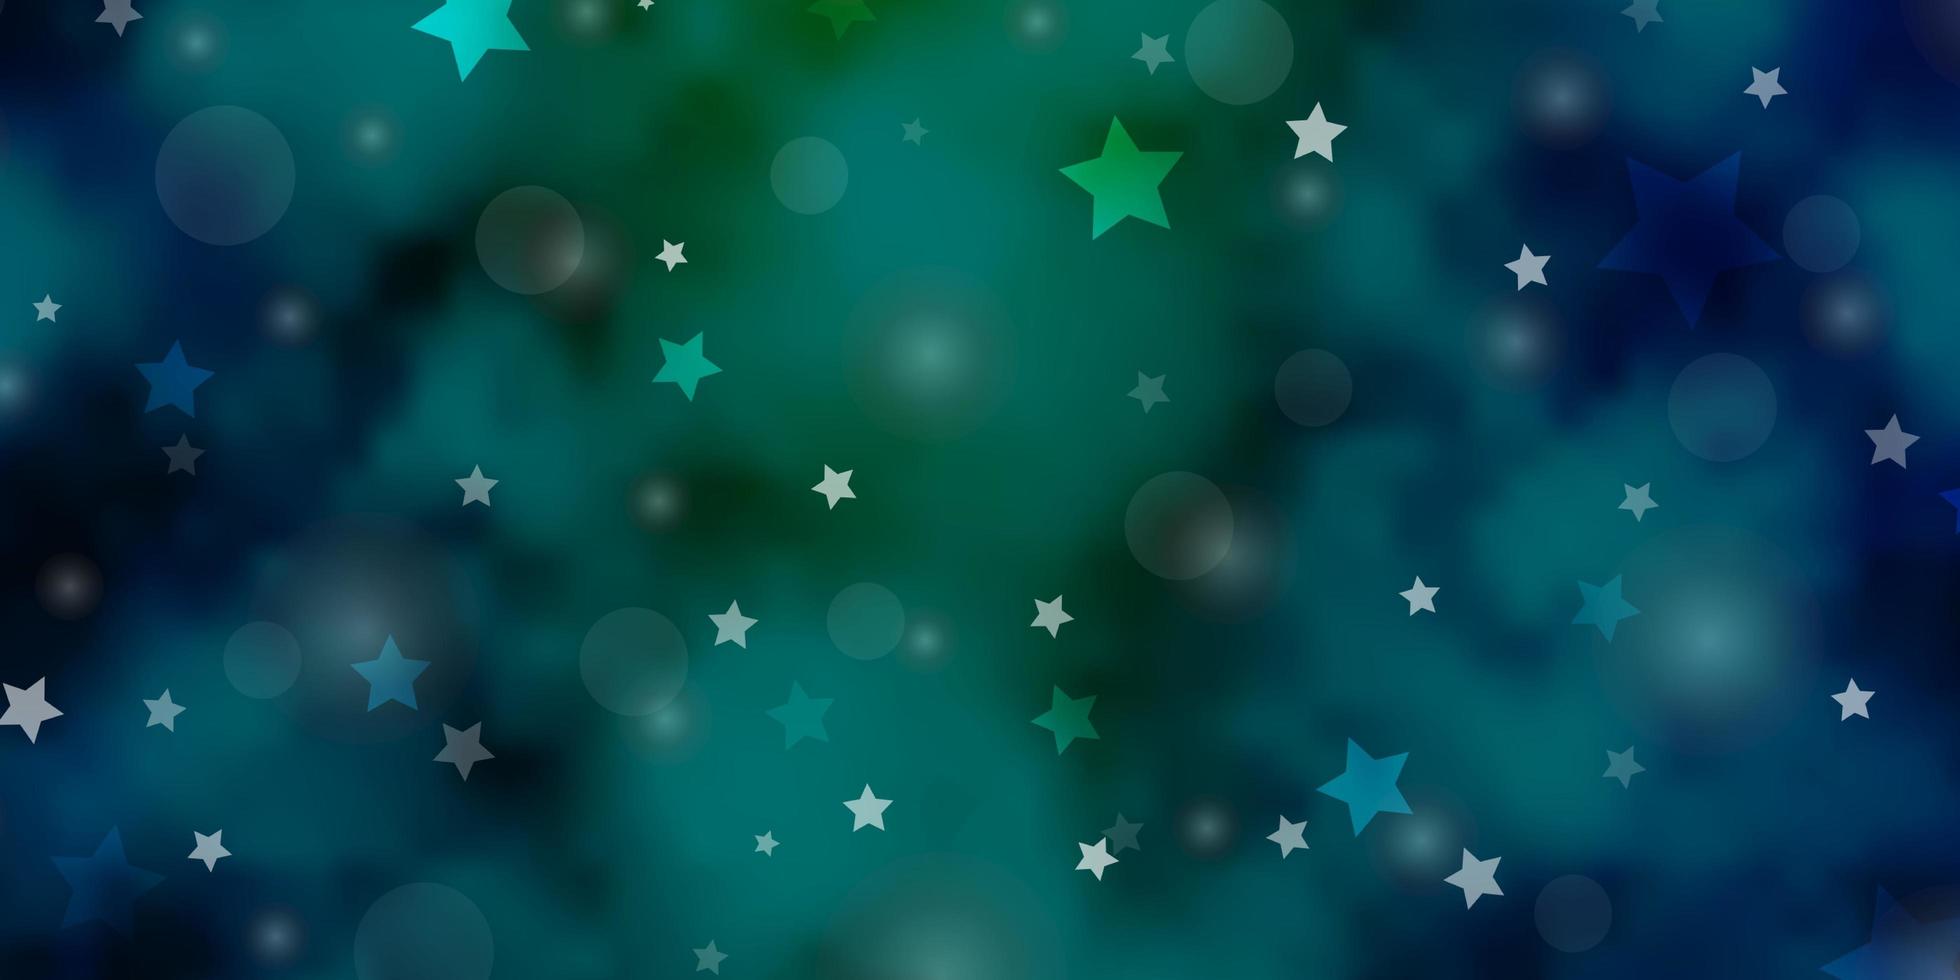 sfondo vettoriale azzurro, verde con cerchi, stelle.